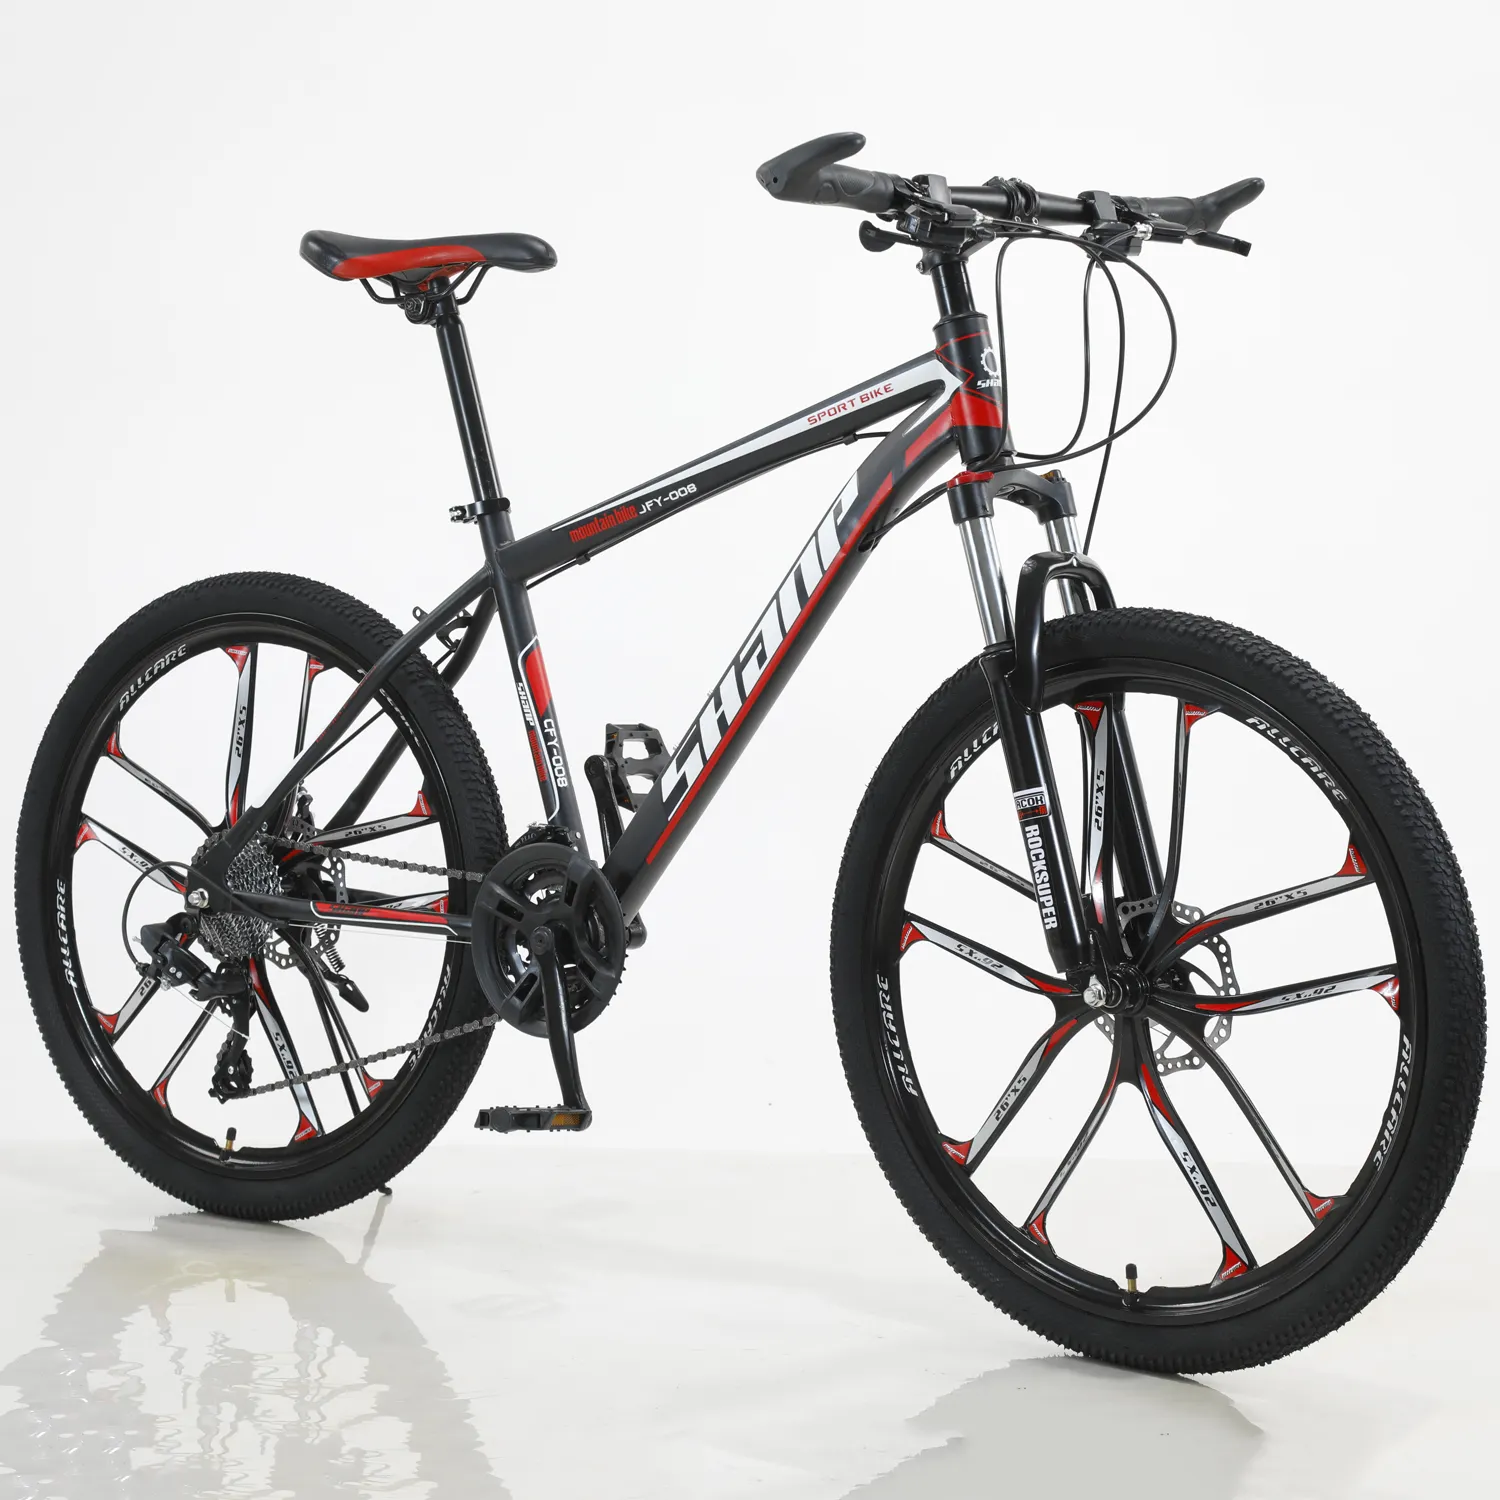 2021 new arrival custom design full suspension mtb bike mountain 29er trek